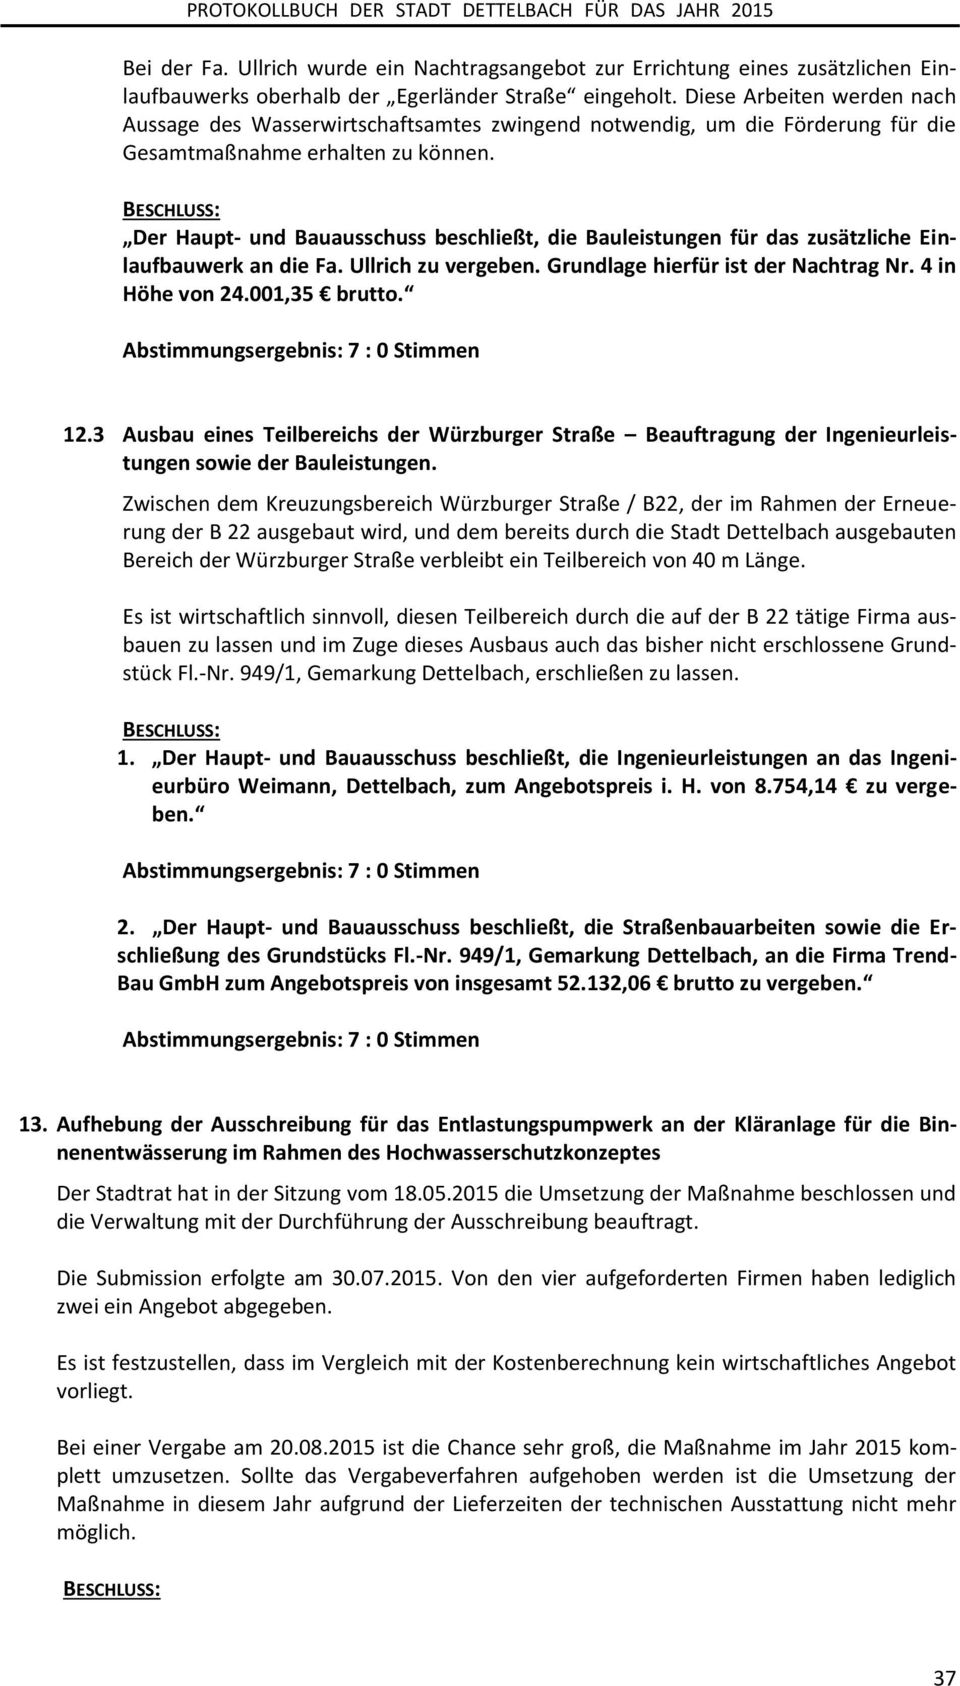 Der Haupt- und Bauausschuss beschließt, die Bauleistungen für das zusätzliche Einlaufbauwerk an die Fa. Ullrich zu vergeben. Grundlage hierfür ist der Nachtrag Nr. 4 in Höhe von 24.001,35 brutto. 12.